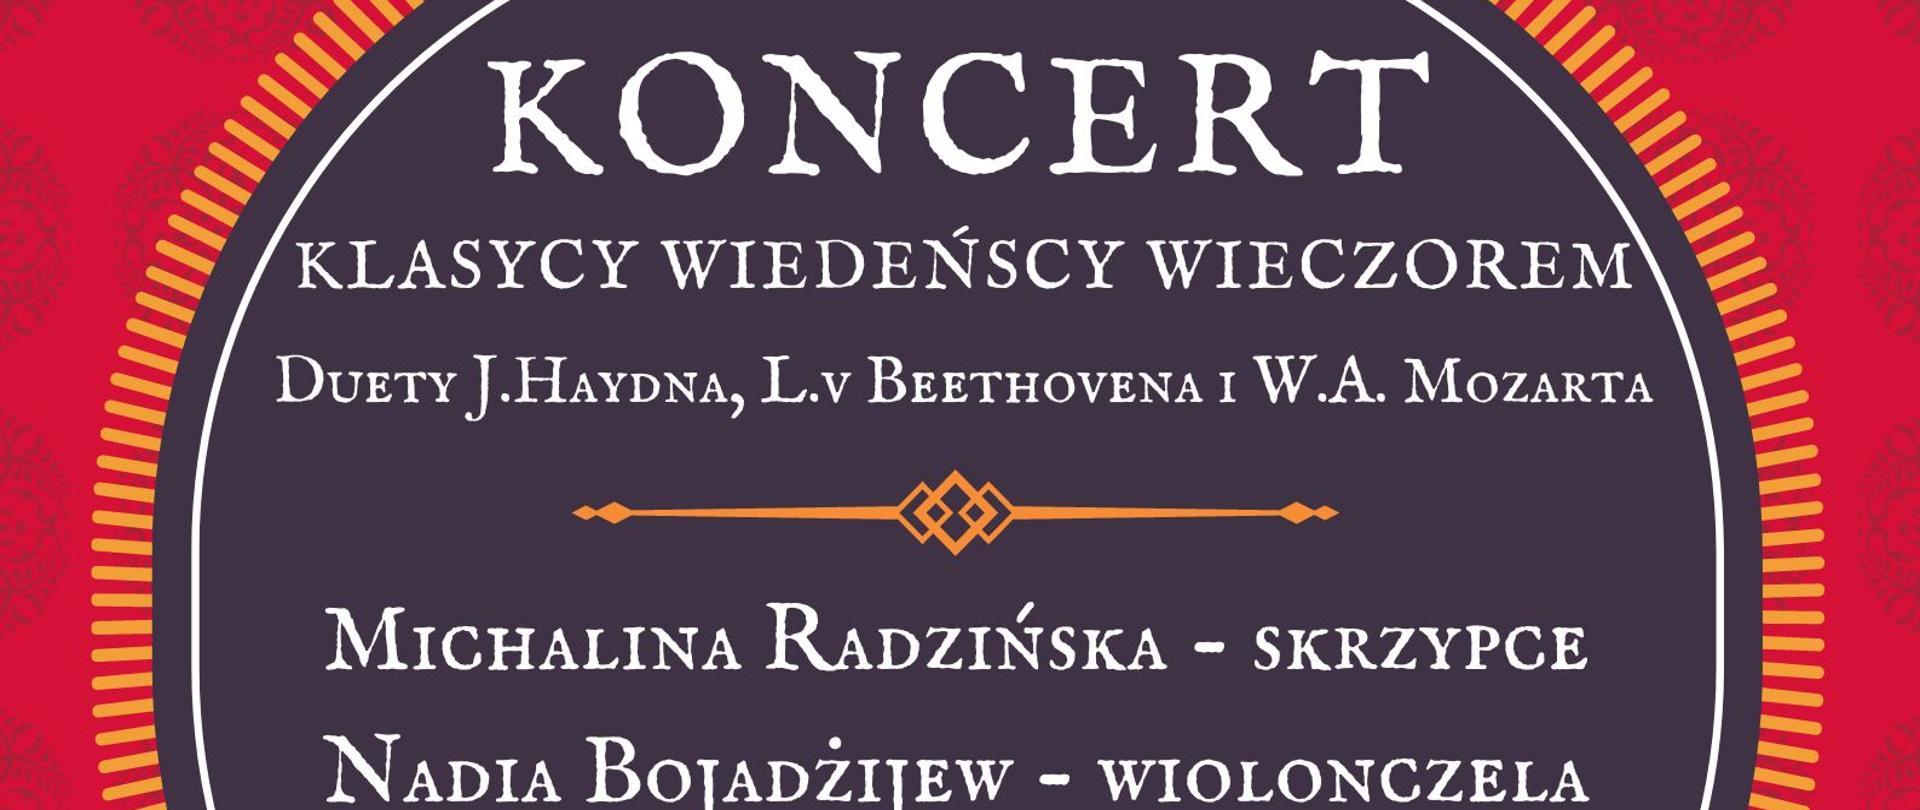 Plakat informacyjny o koncercie pt. Klasycy wiedeńscy wieczorem, który odbędzie się 15.06.2023 r. o godz. 18.00 Michalina Radzińska - skrzypce, Nadia Bojadżijew - wiolonczela.
Na plakacie artystki z instrumentami